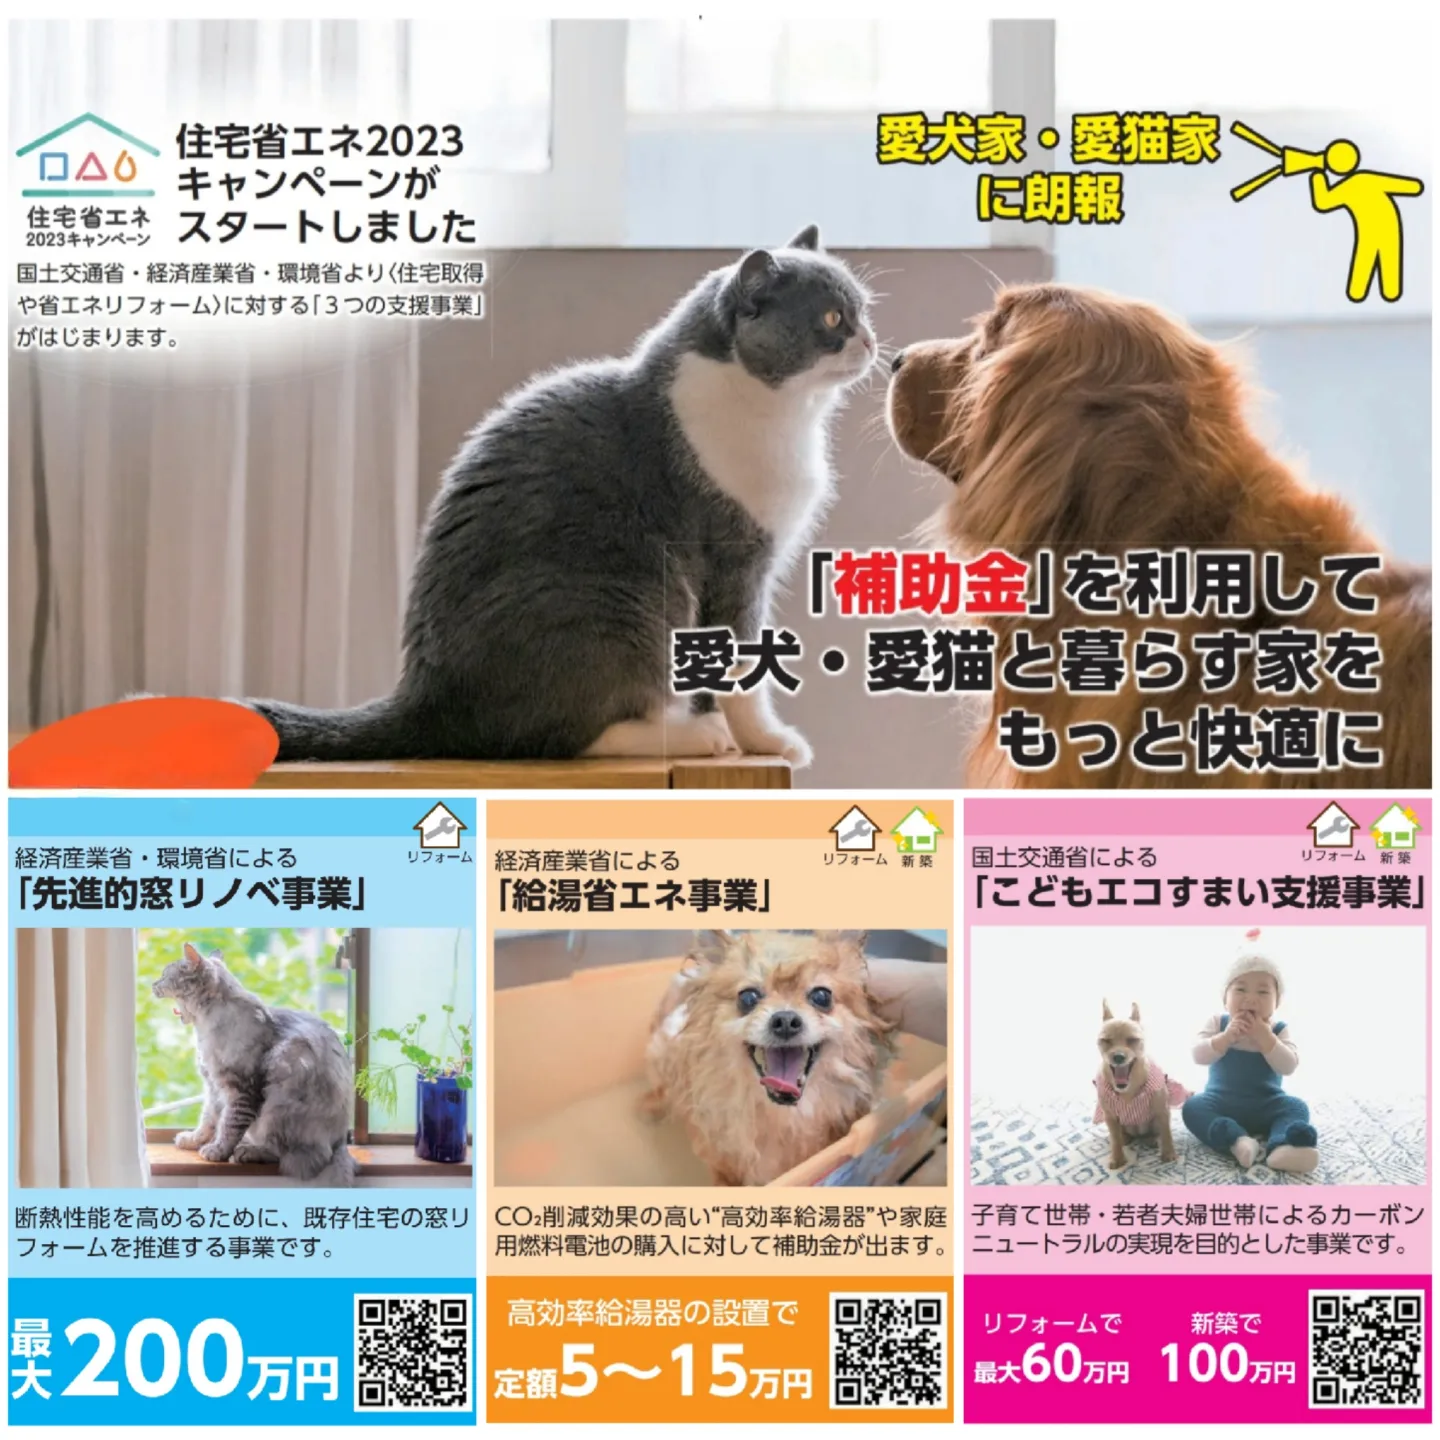 【お知らせ】3つの補助事業が「愛犬愛猫との暮らし」の悩みを解決!!!